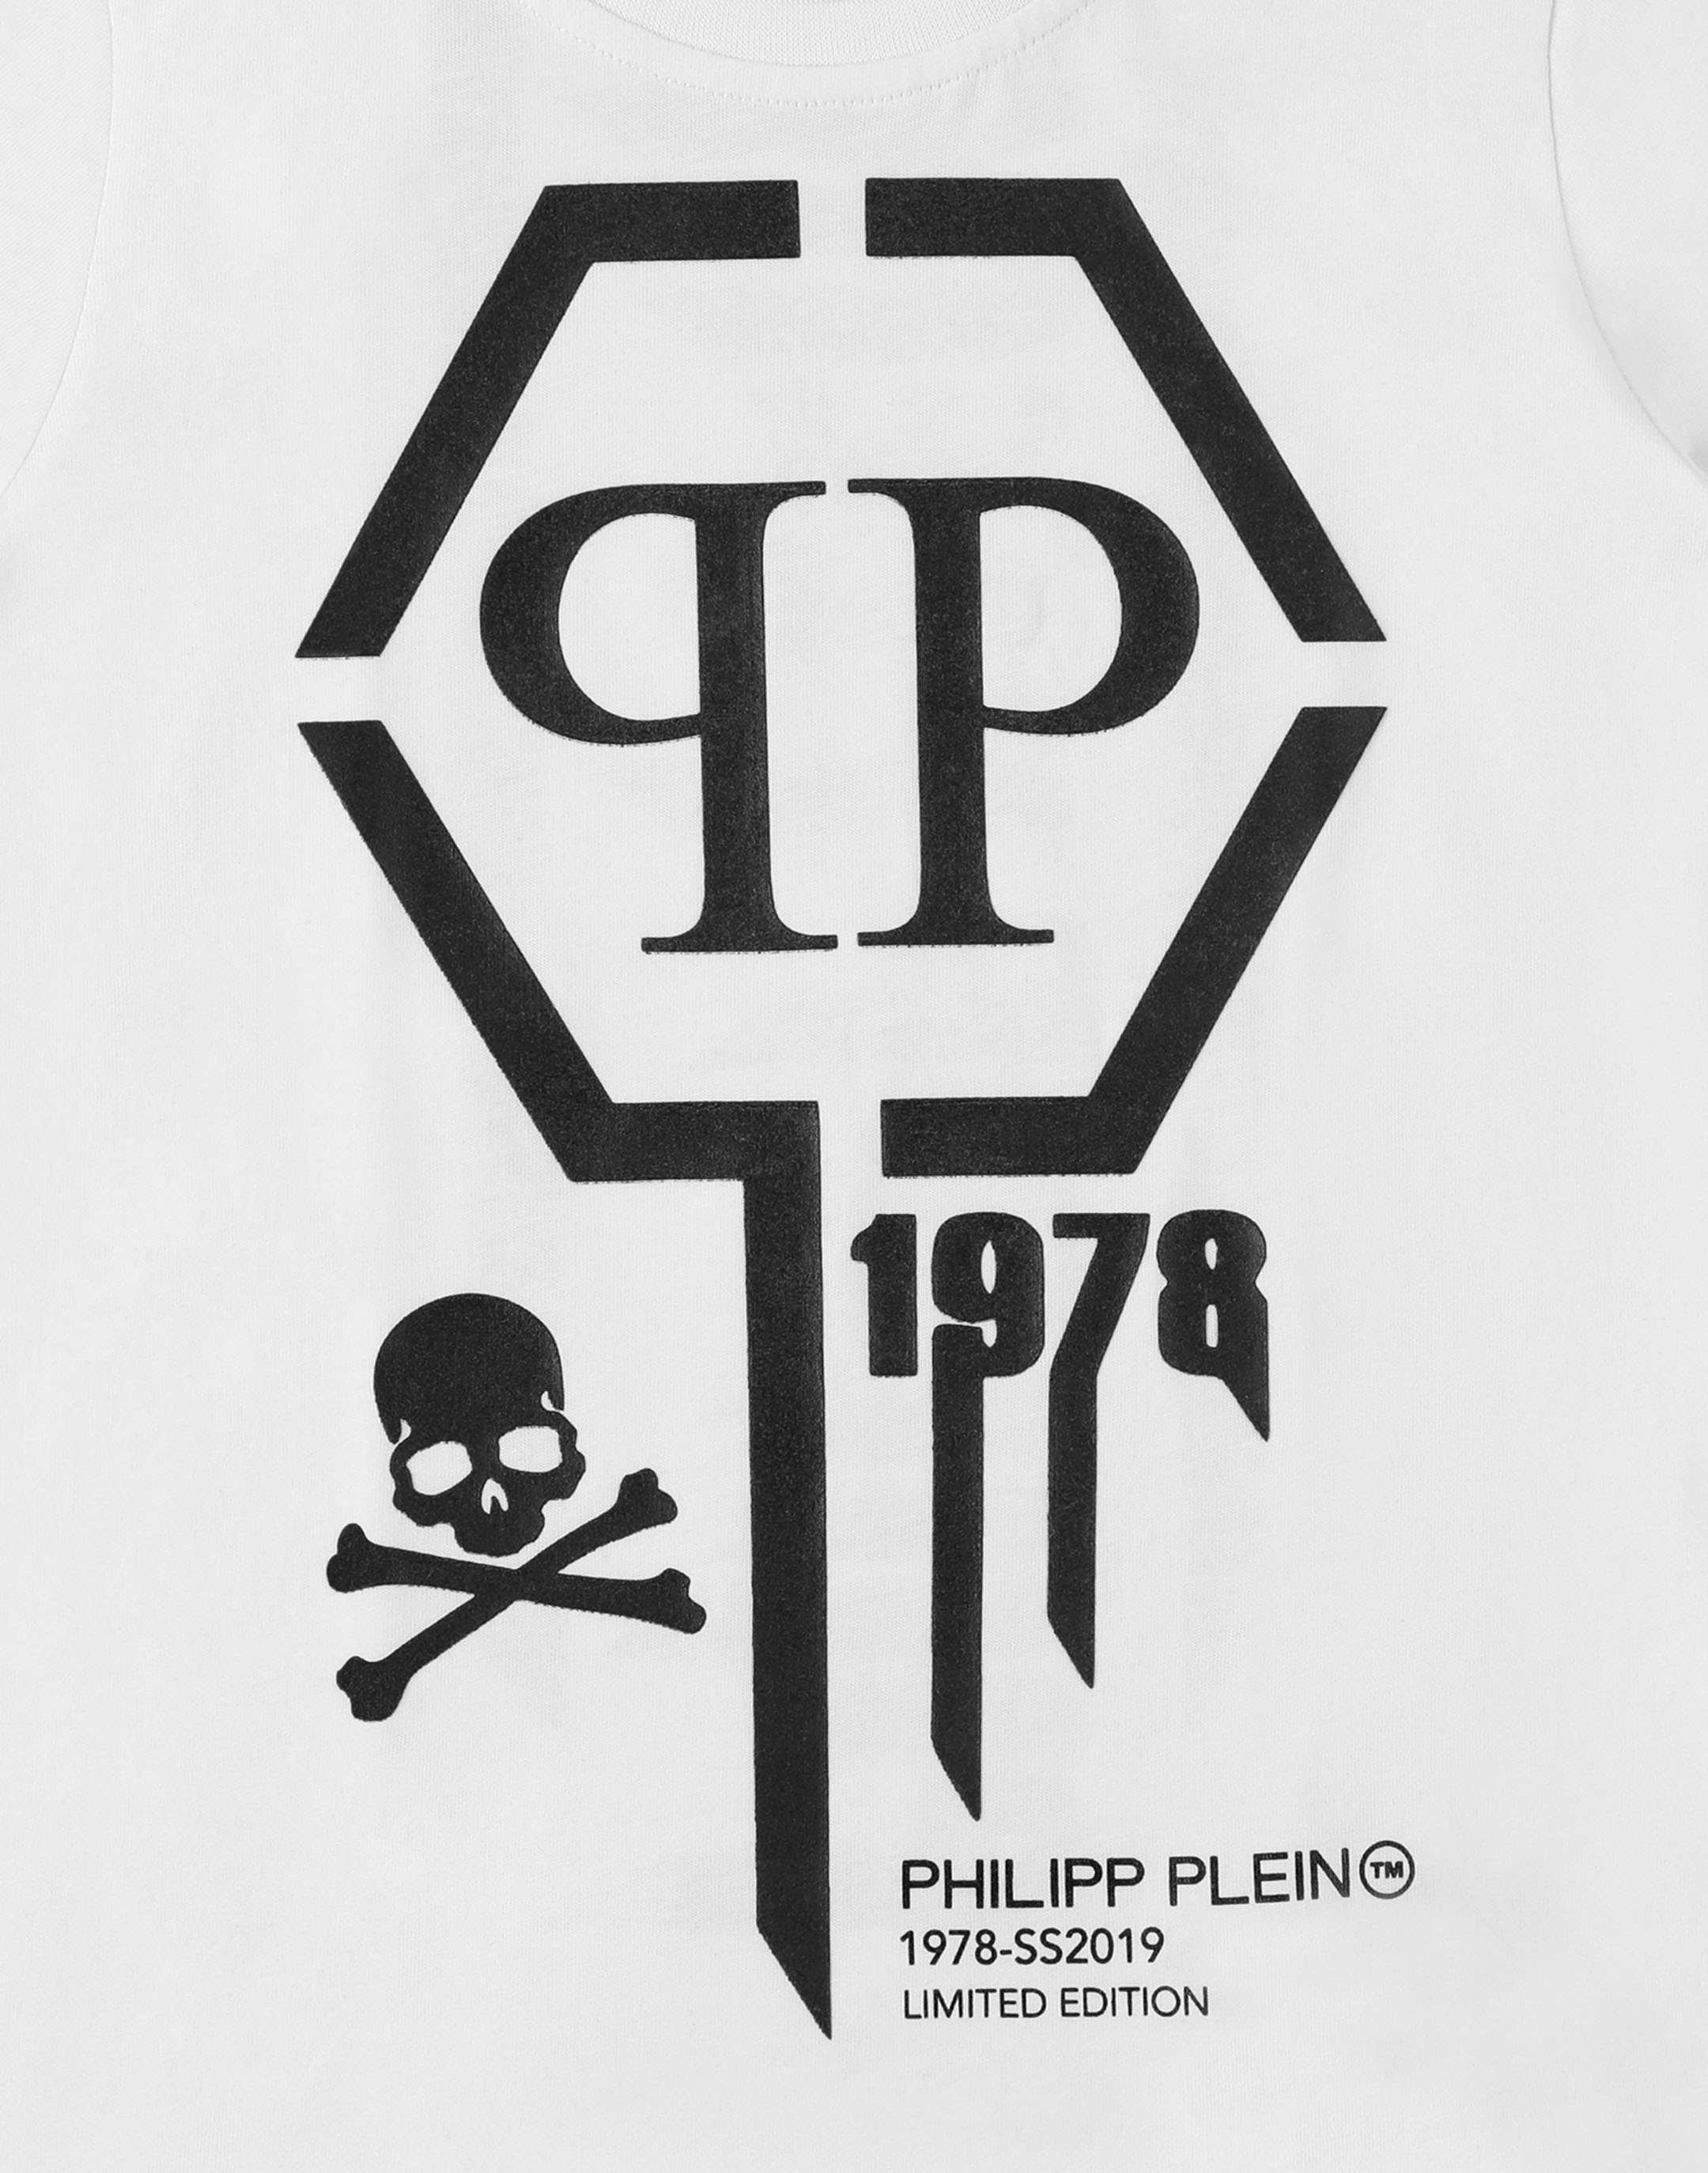 philipe plein logo - 65% remise - ibnsina-hospital.com